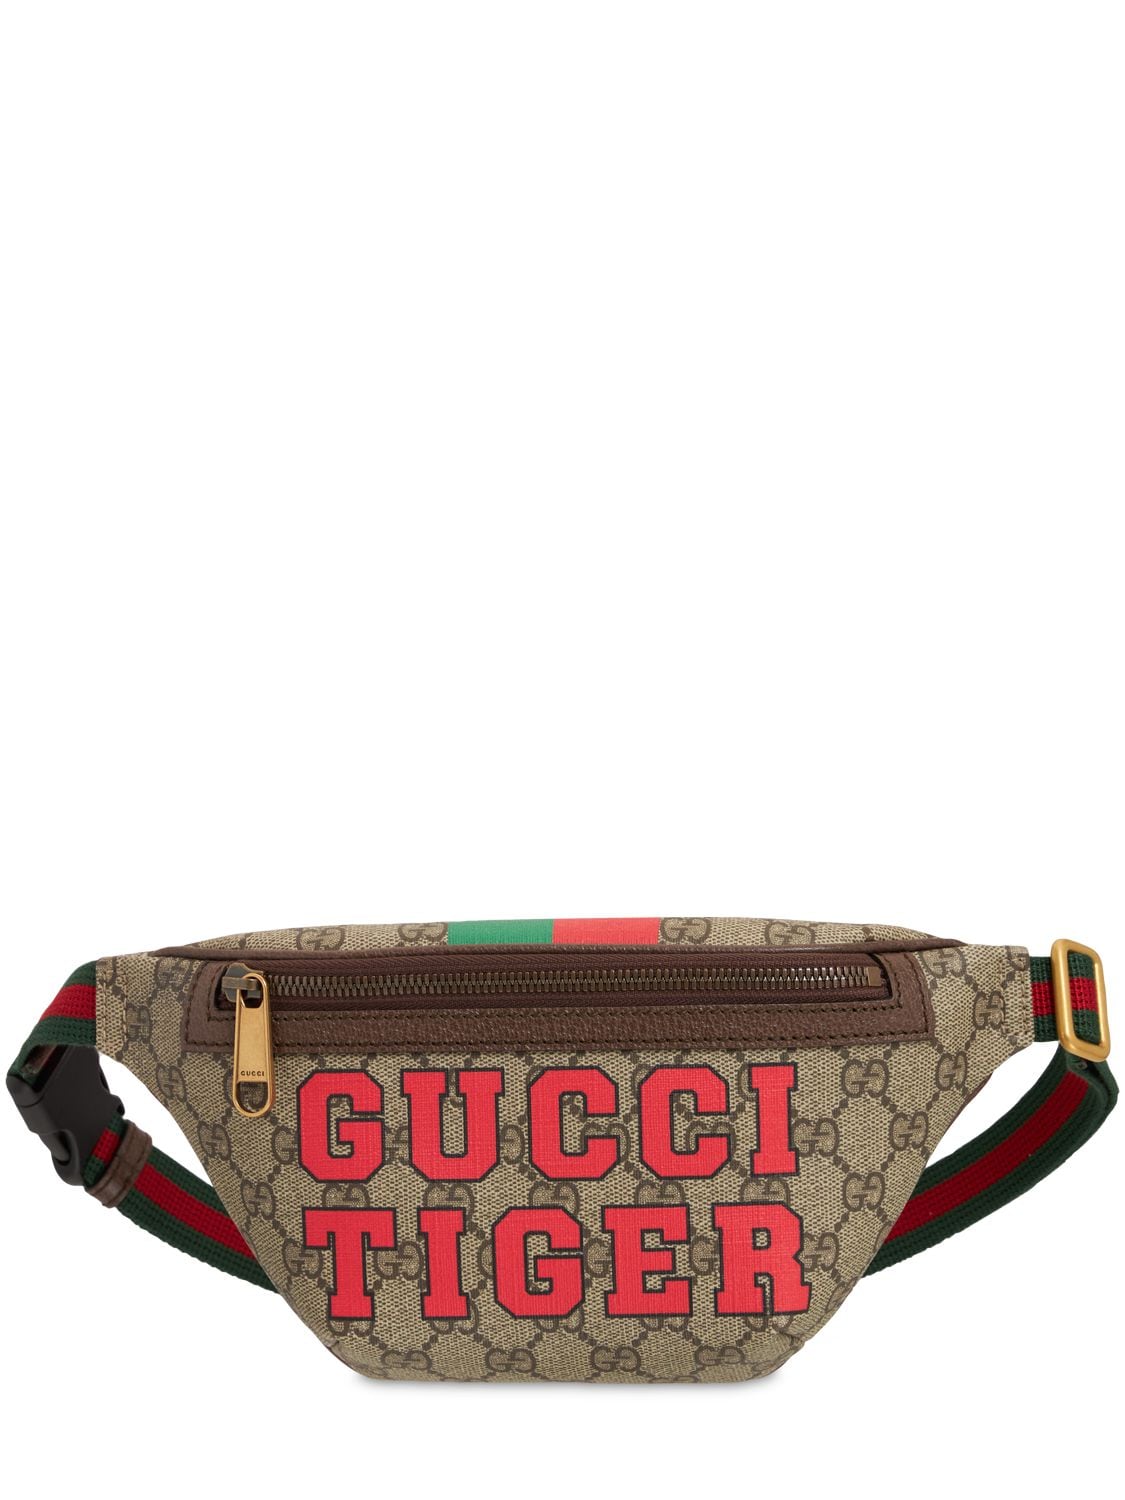 fusion pilfer tag et billede Gucci Tiger Gg Supreme Belt Bag for Men